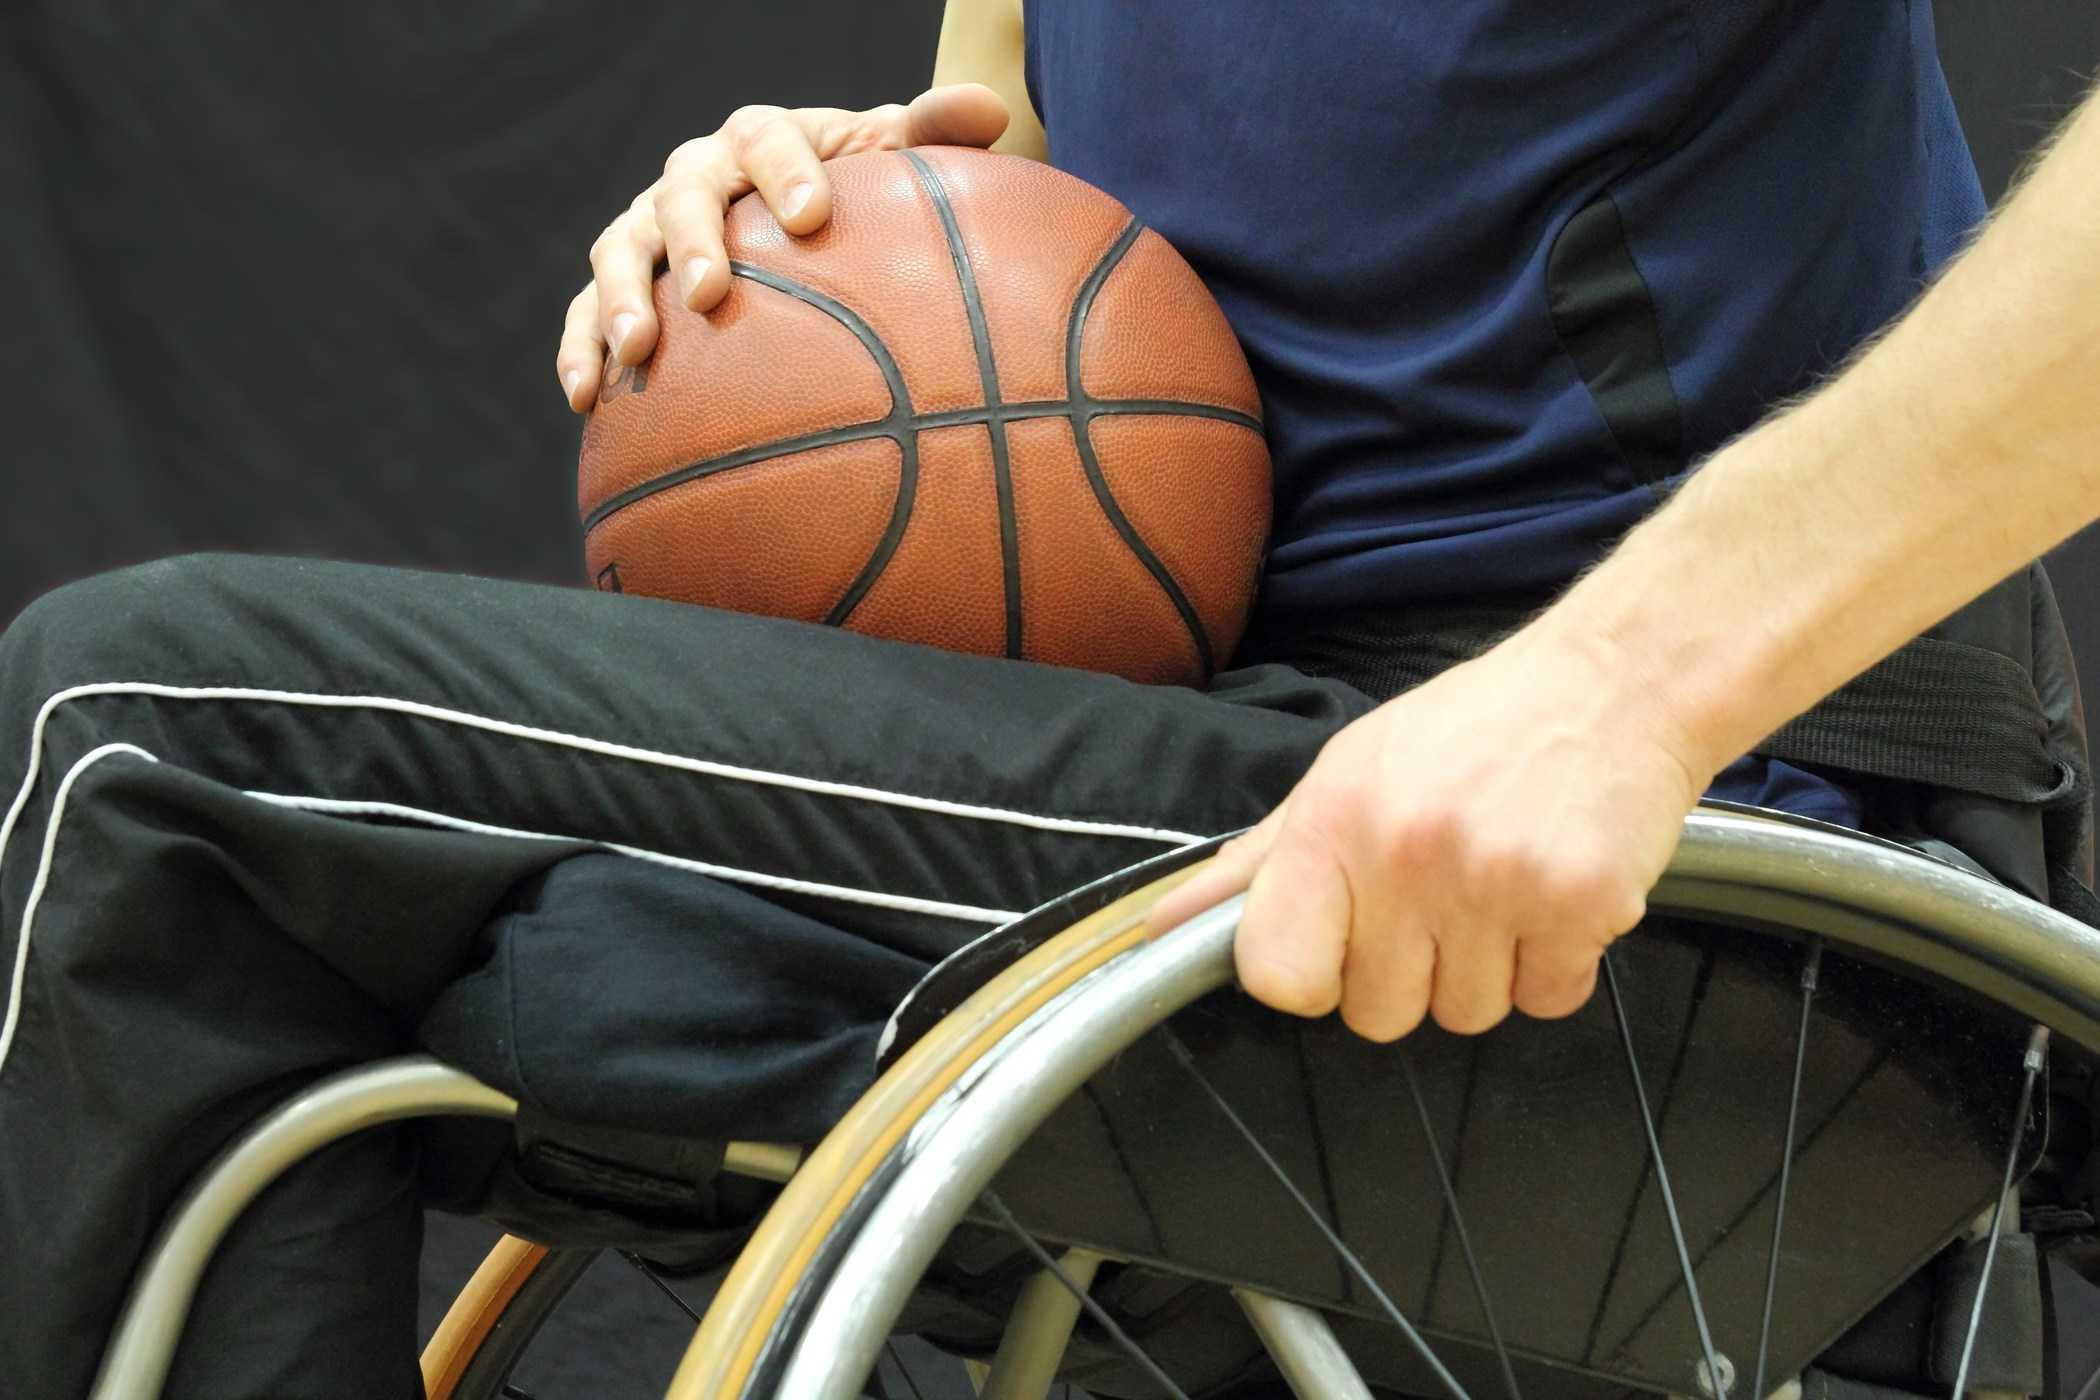 13 добри спорта за хора с увреждания